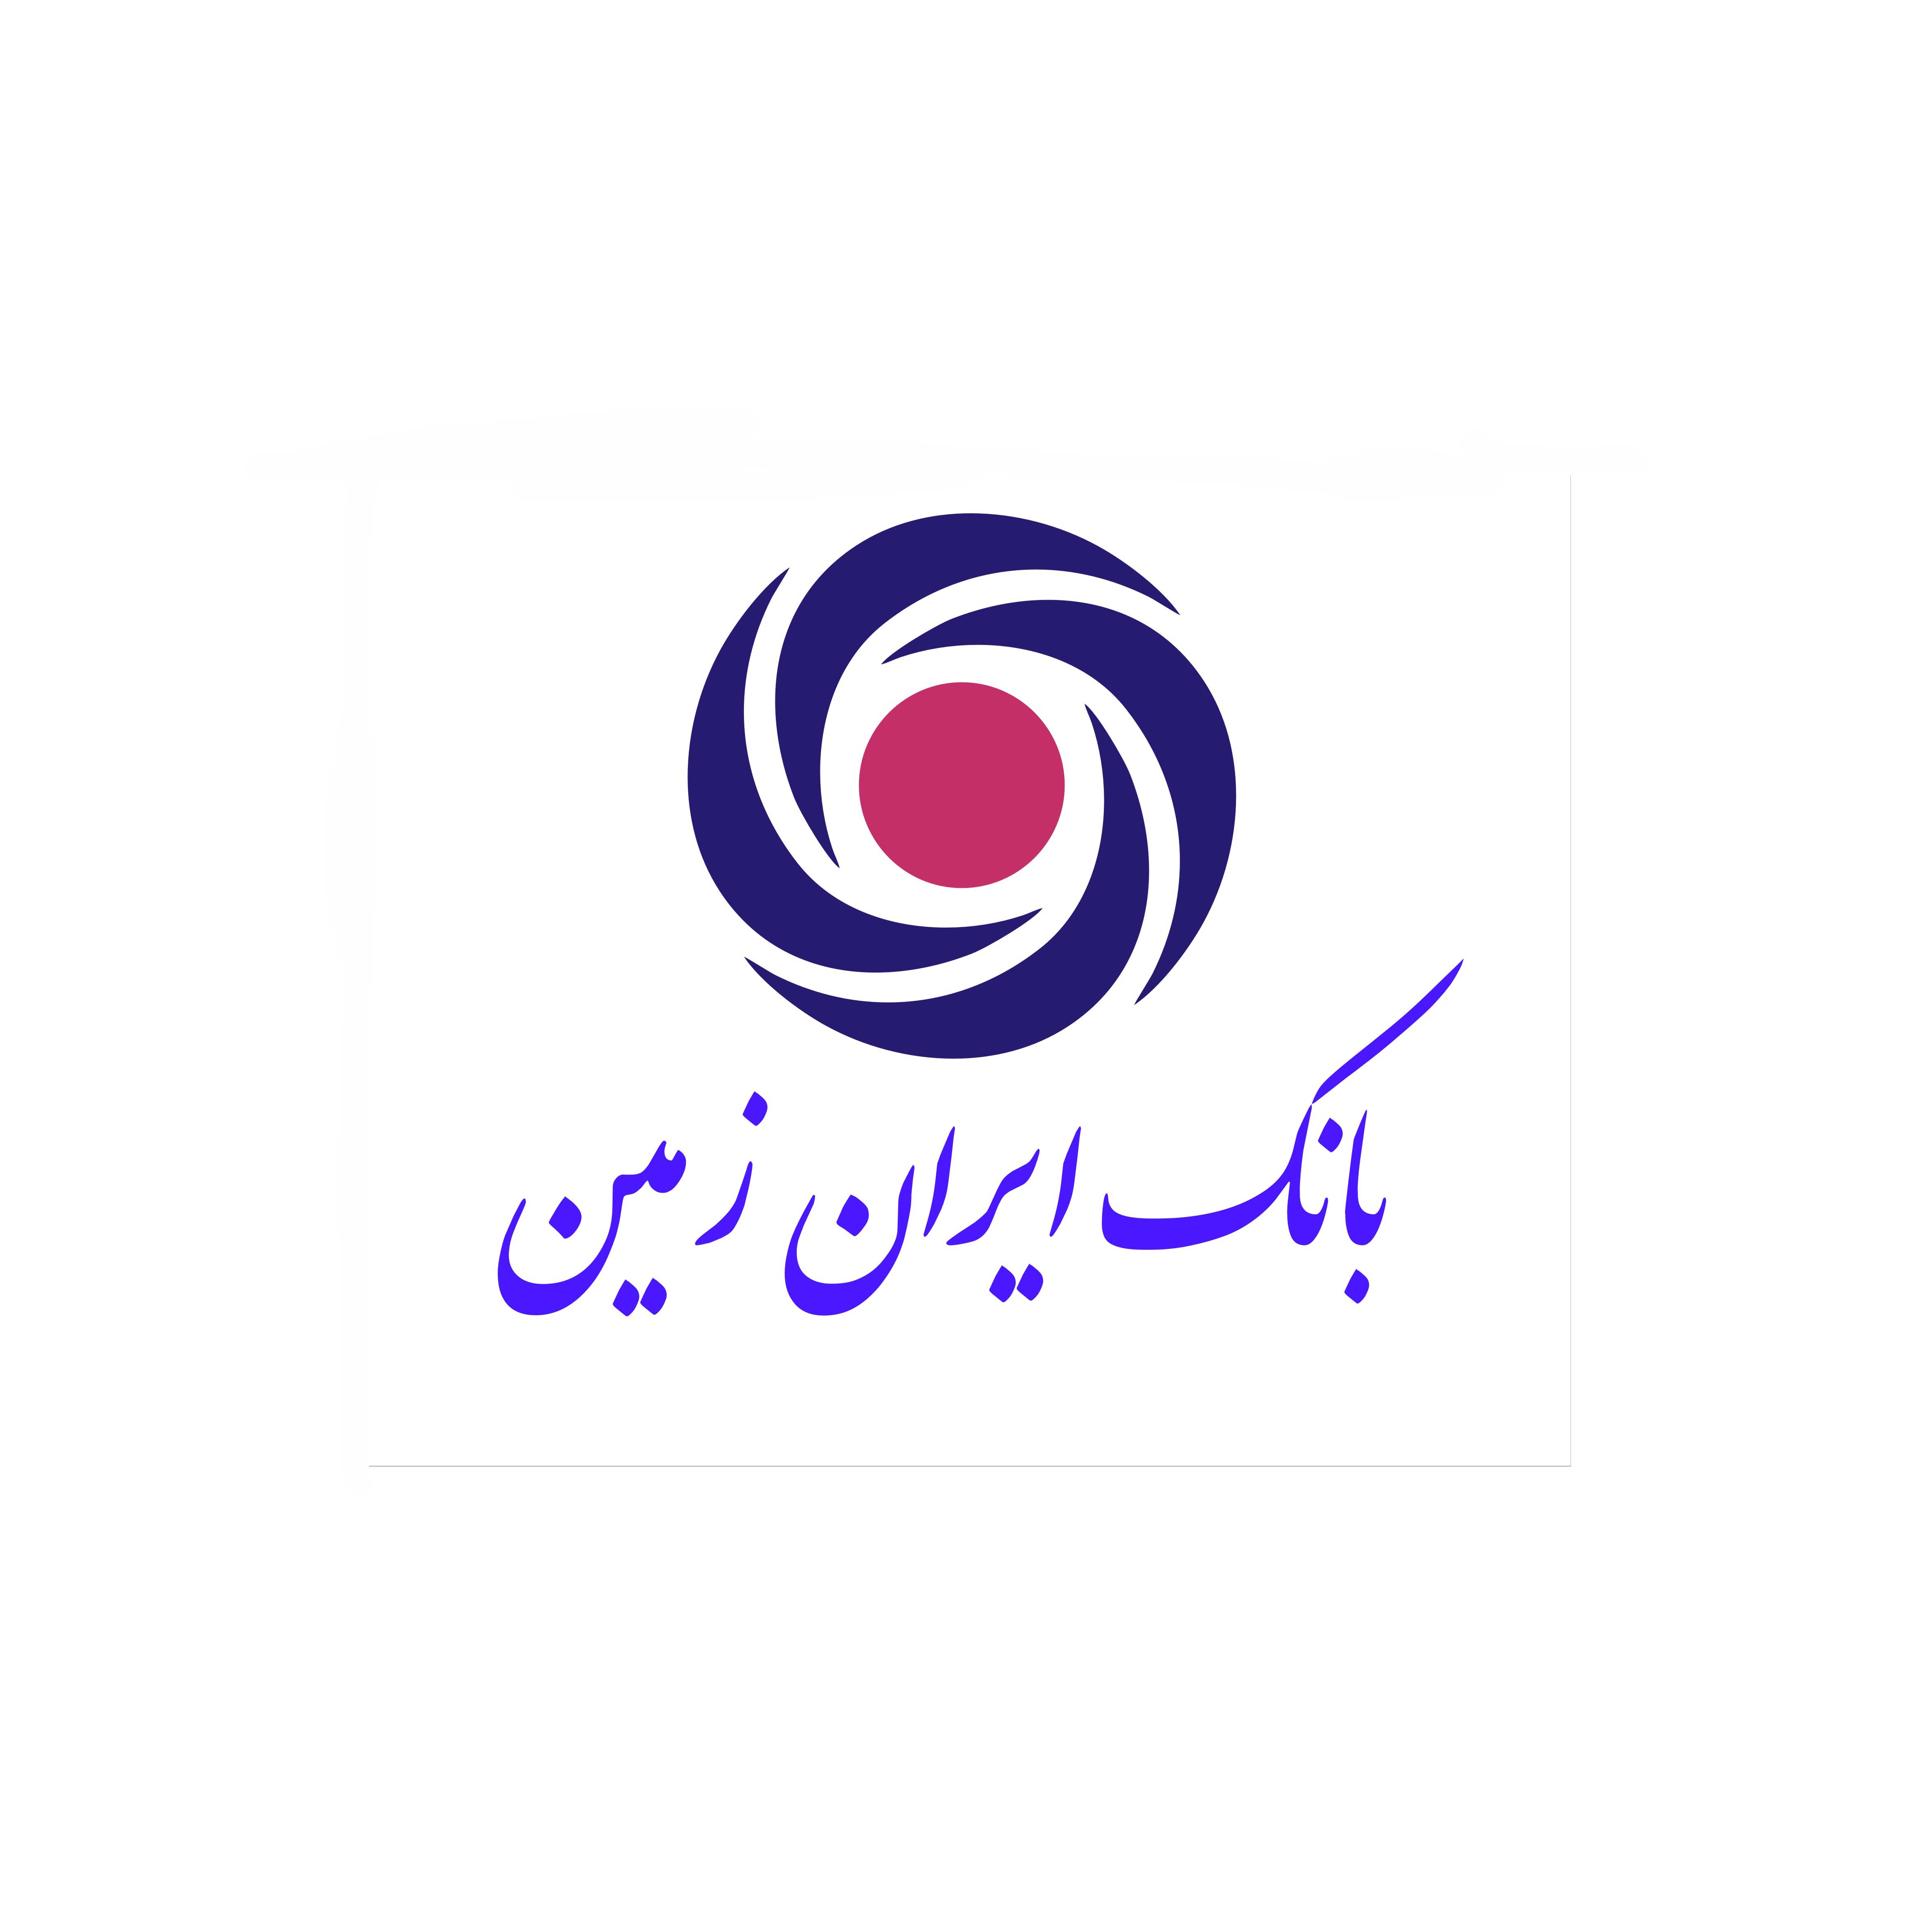 امکان خرید اینترنتی هدیه کارت در بانک ایران زمین فراهم شد